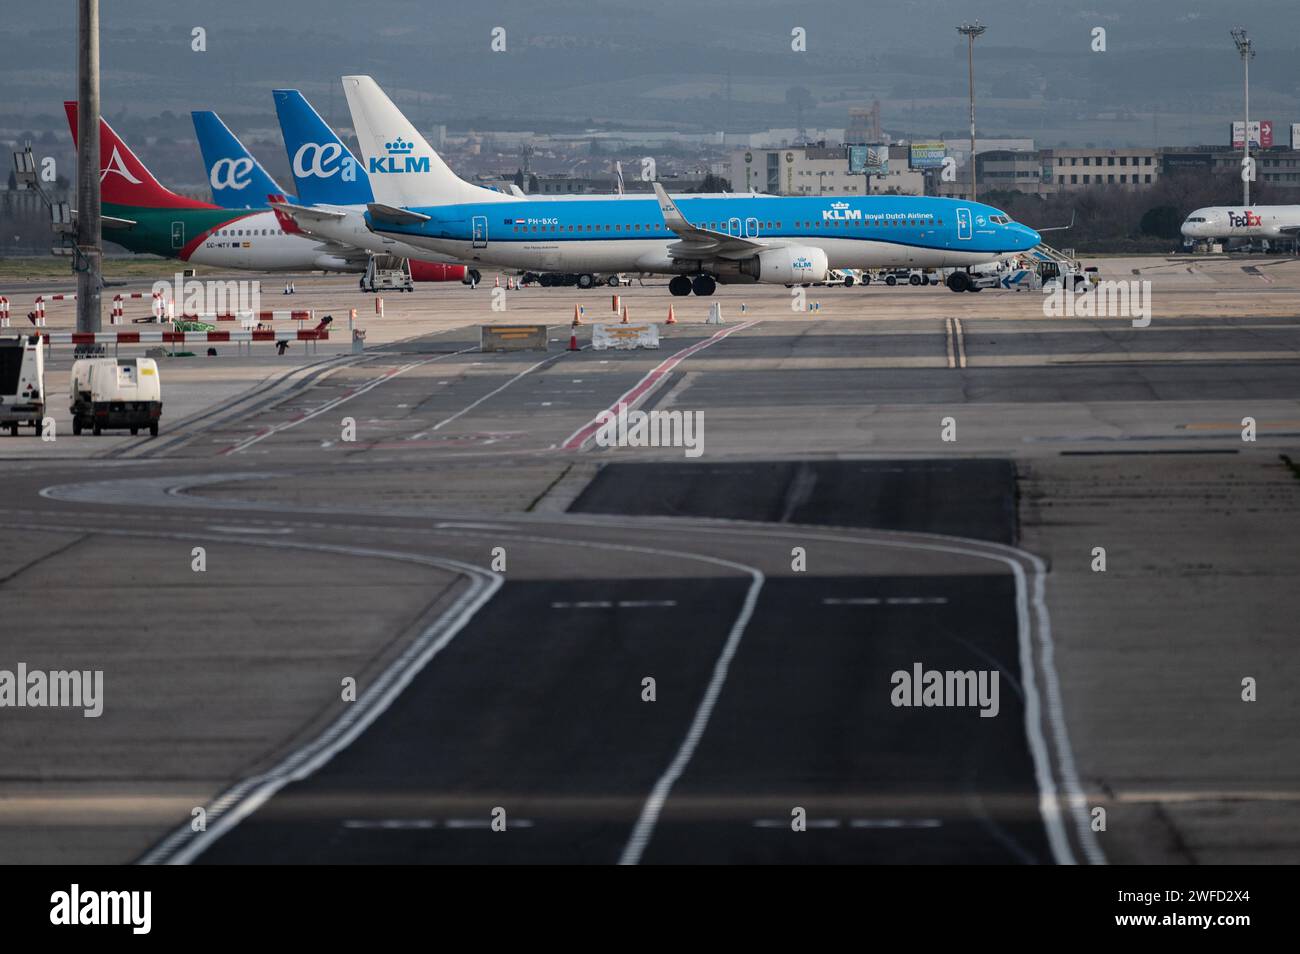 Aerei parcheggiati all'aeroporto Adolfo Suarez Madrid-Barajas. Foto Stock